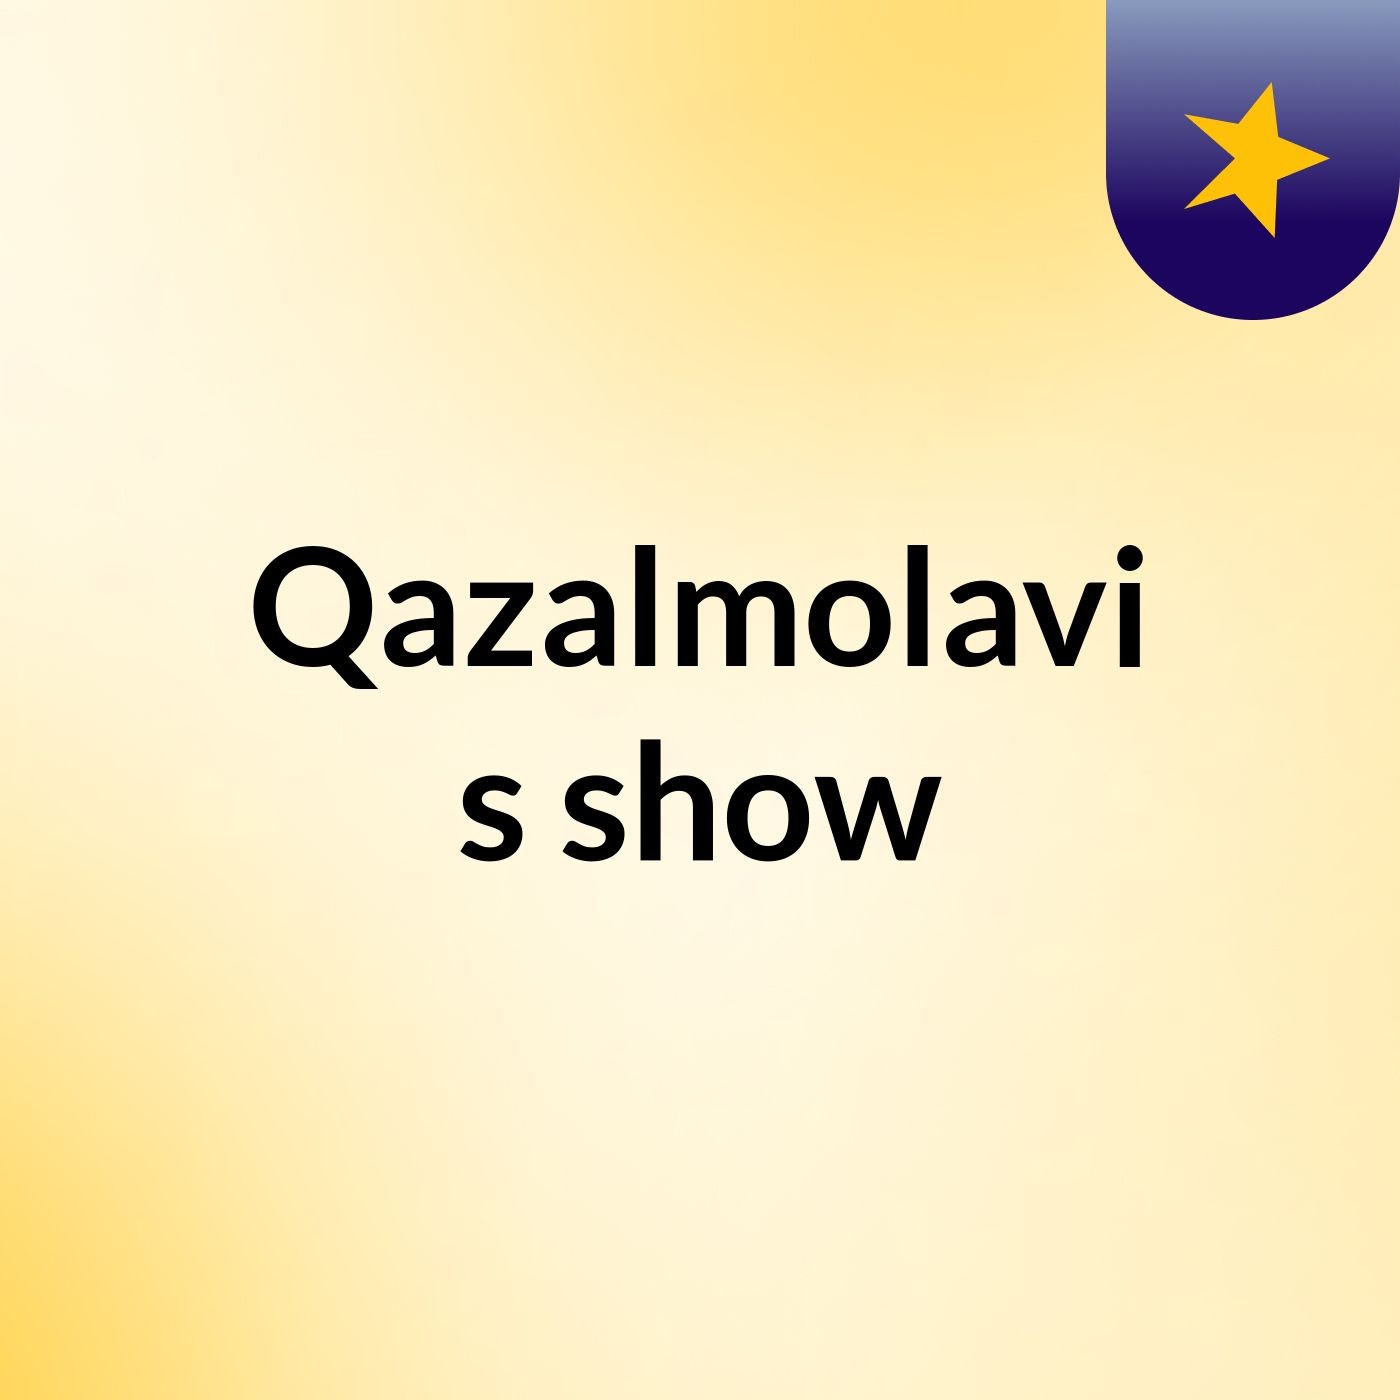 Qazalmolavi's show